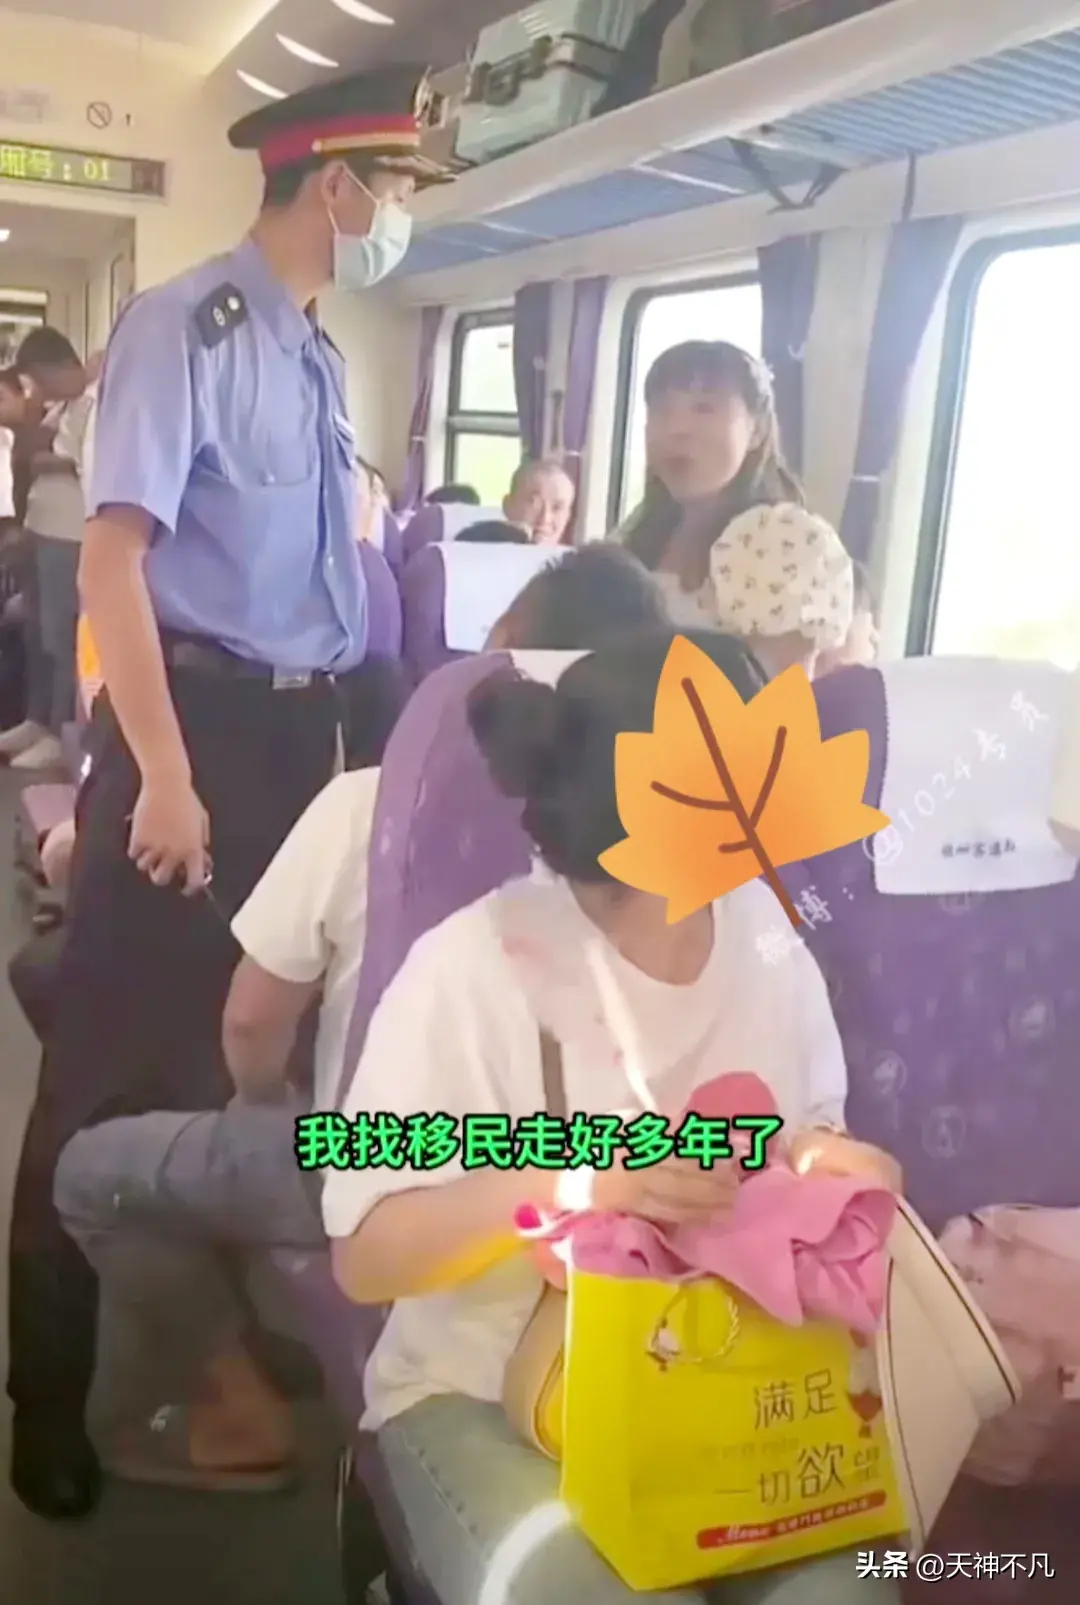 女子火车抢座自称移民日本多年!太嚣张